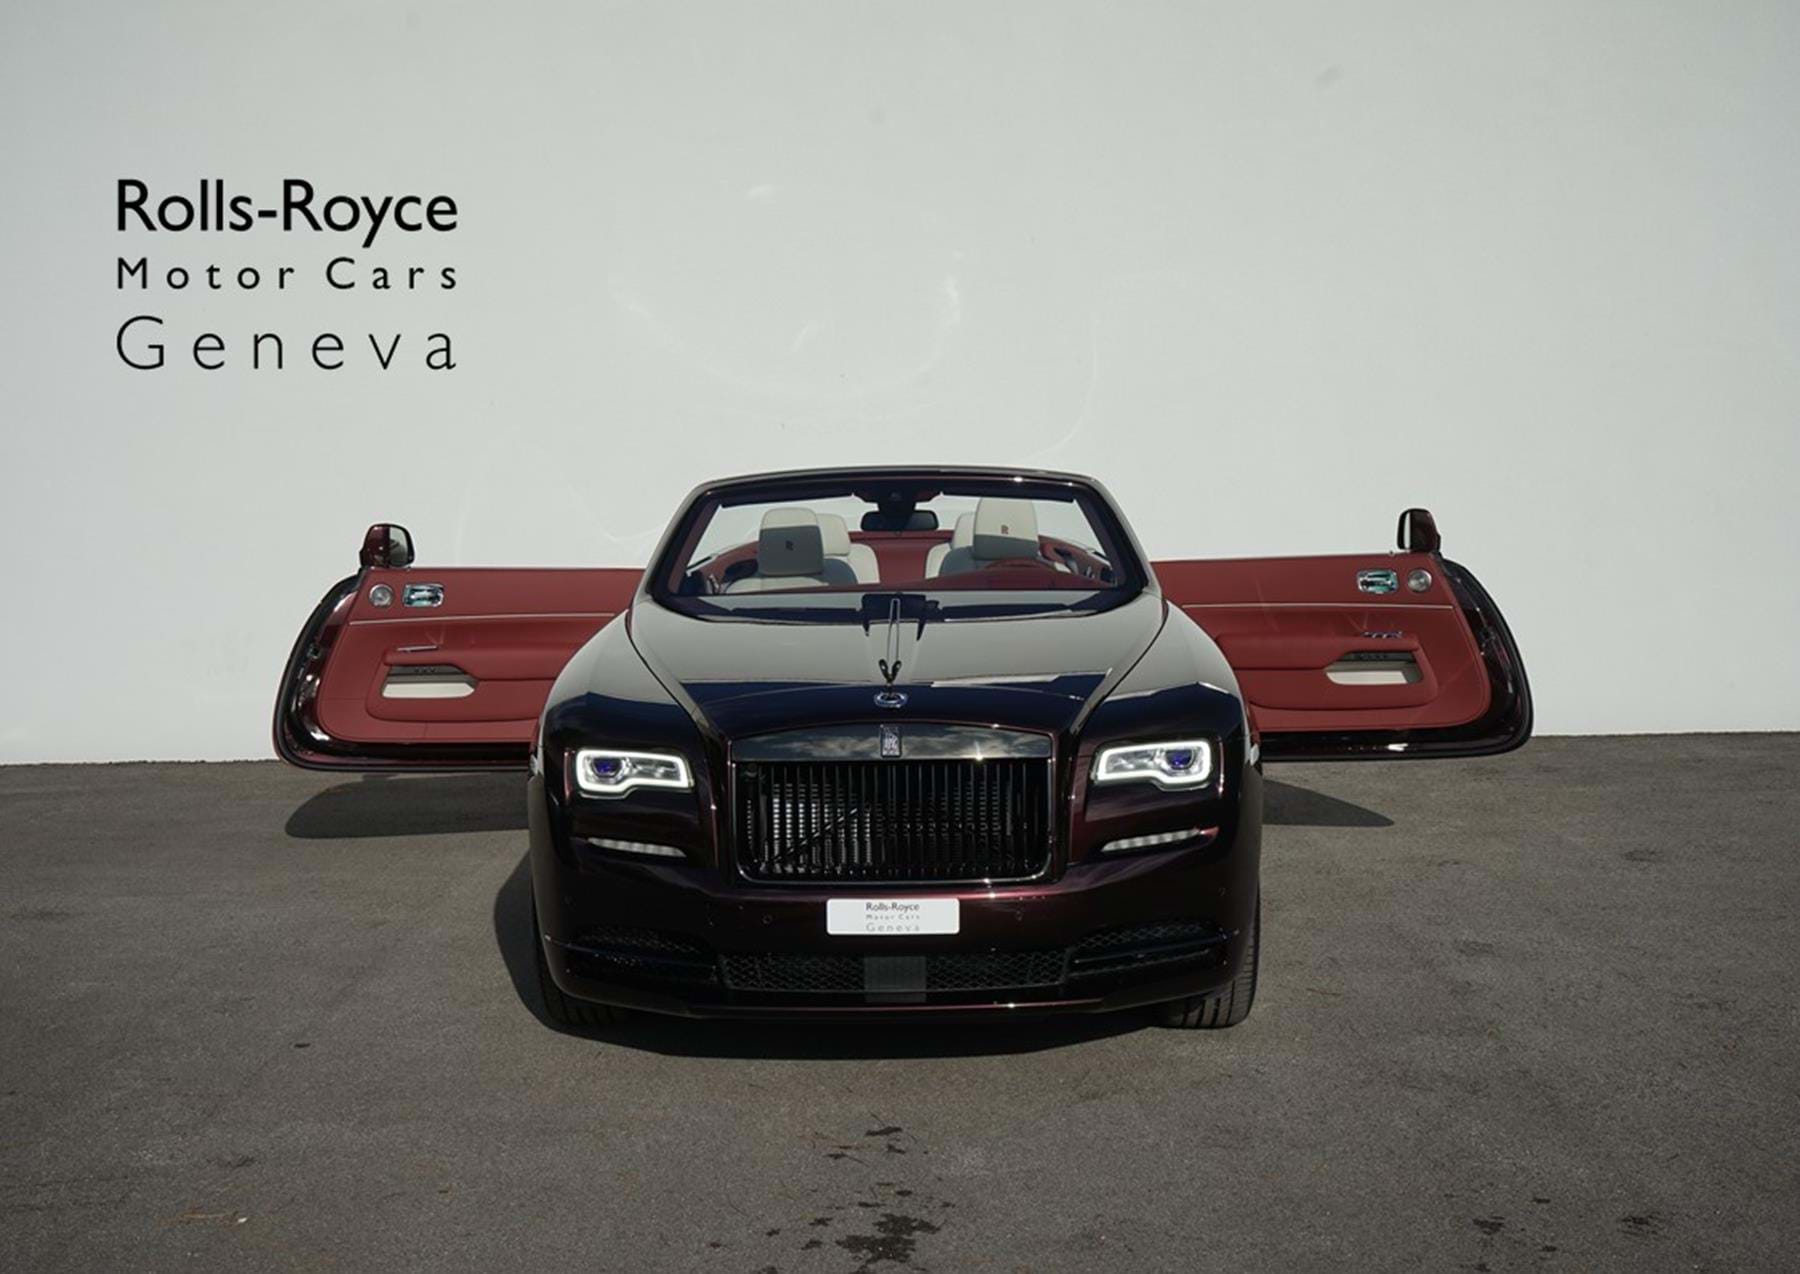 RollsRoyce  RollsRoyce Motor Cars Abu Dhabi Motors  Facebook